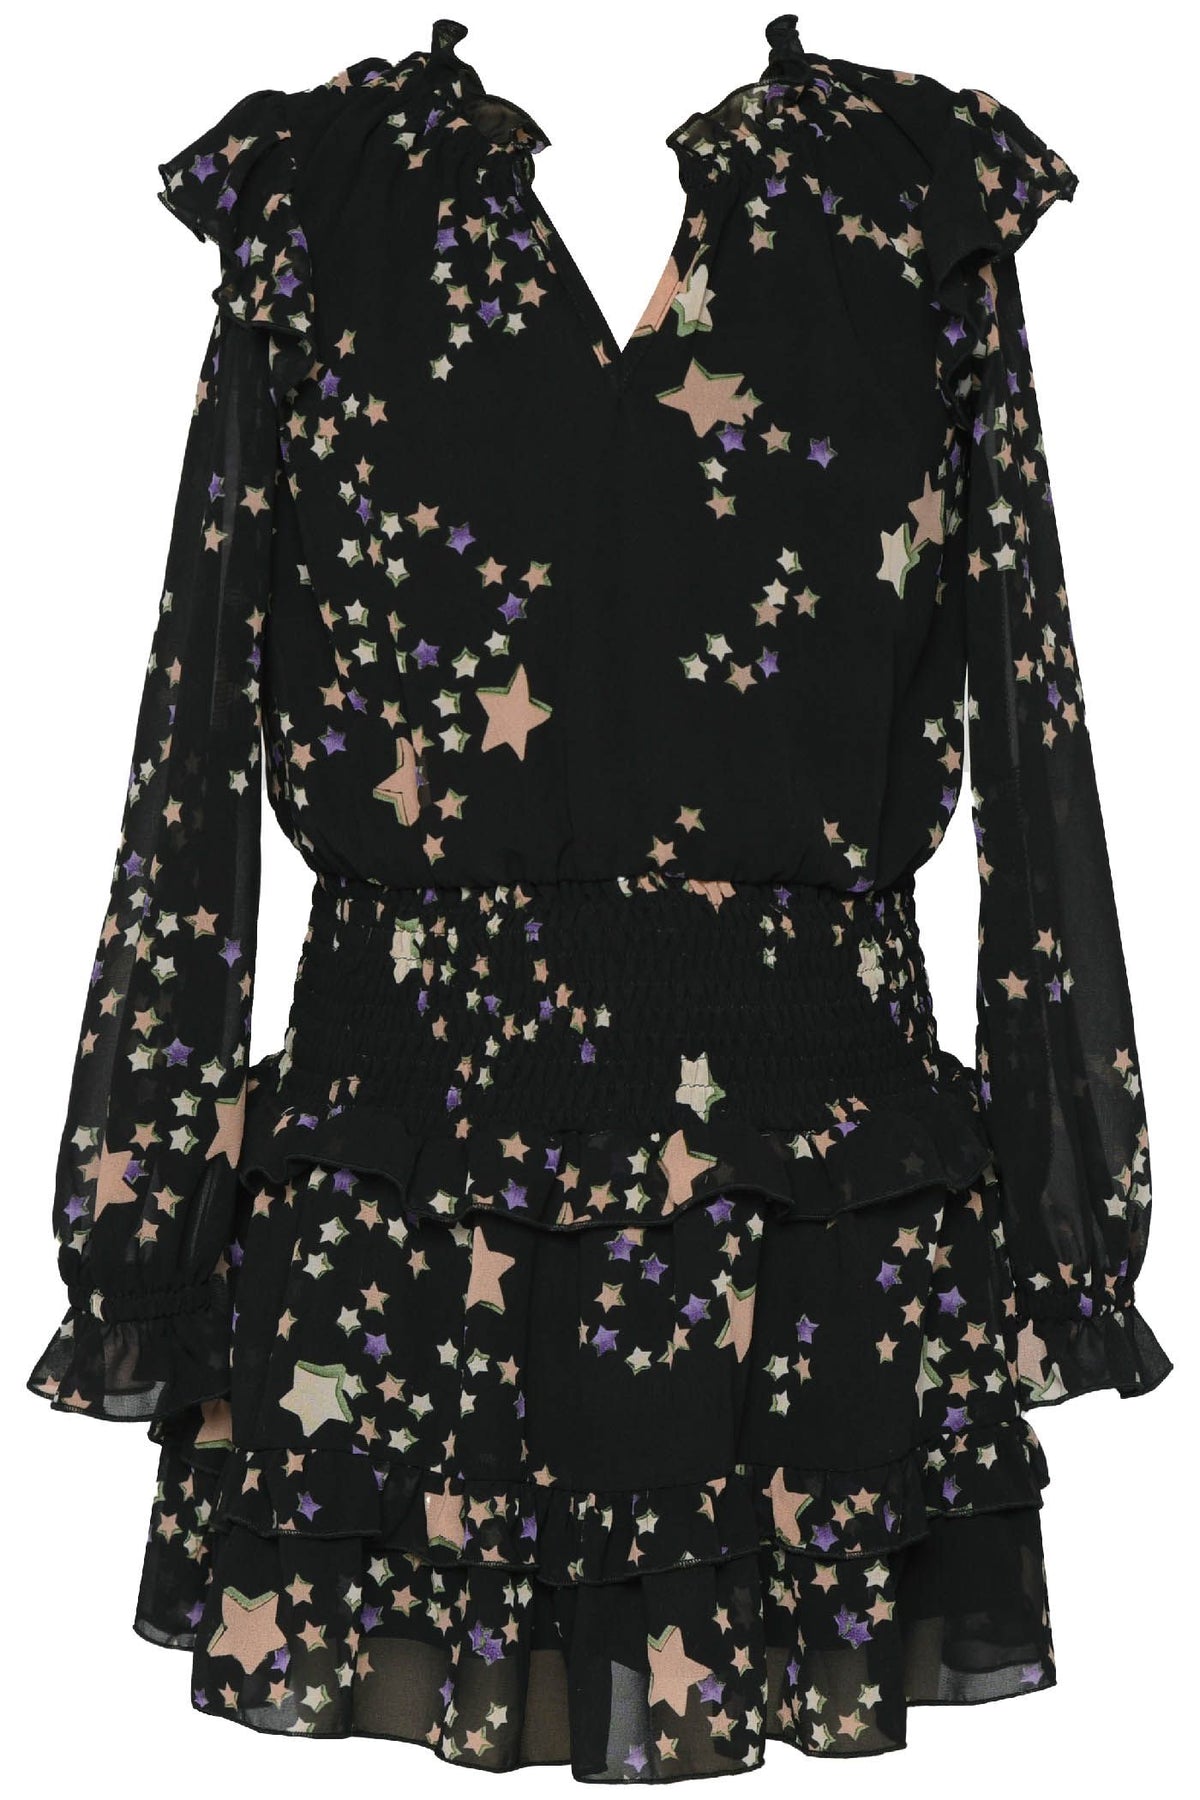 L/S Star Printed Dress- Black Multi